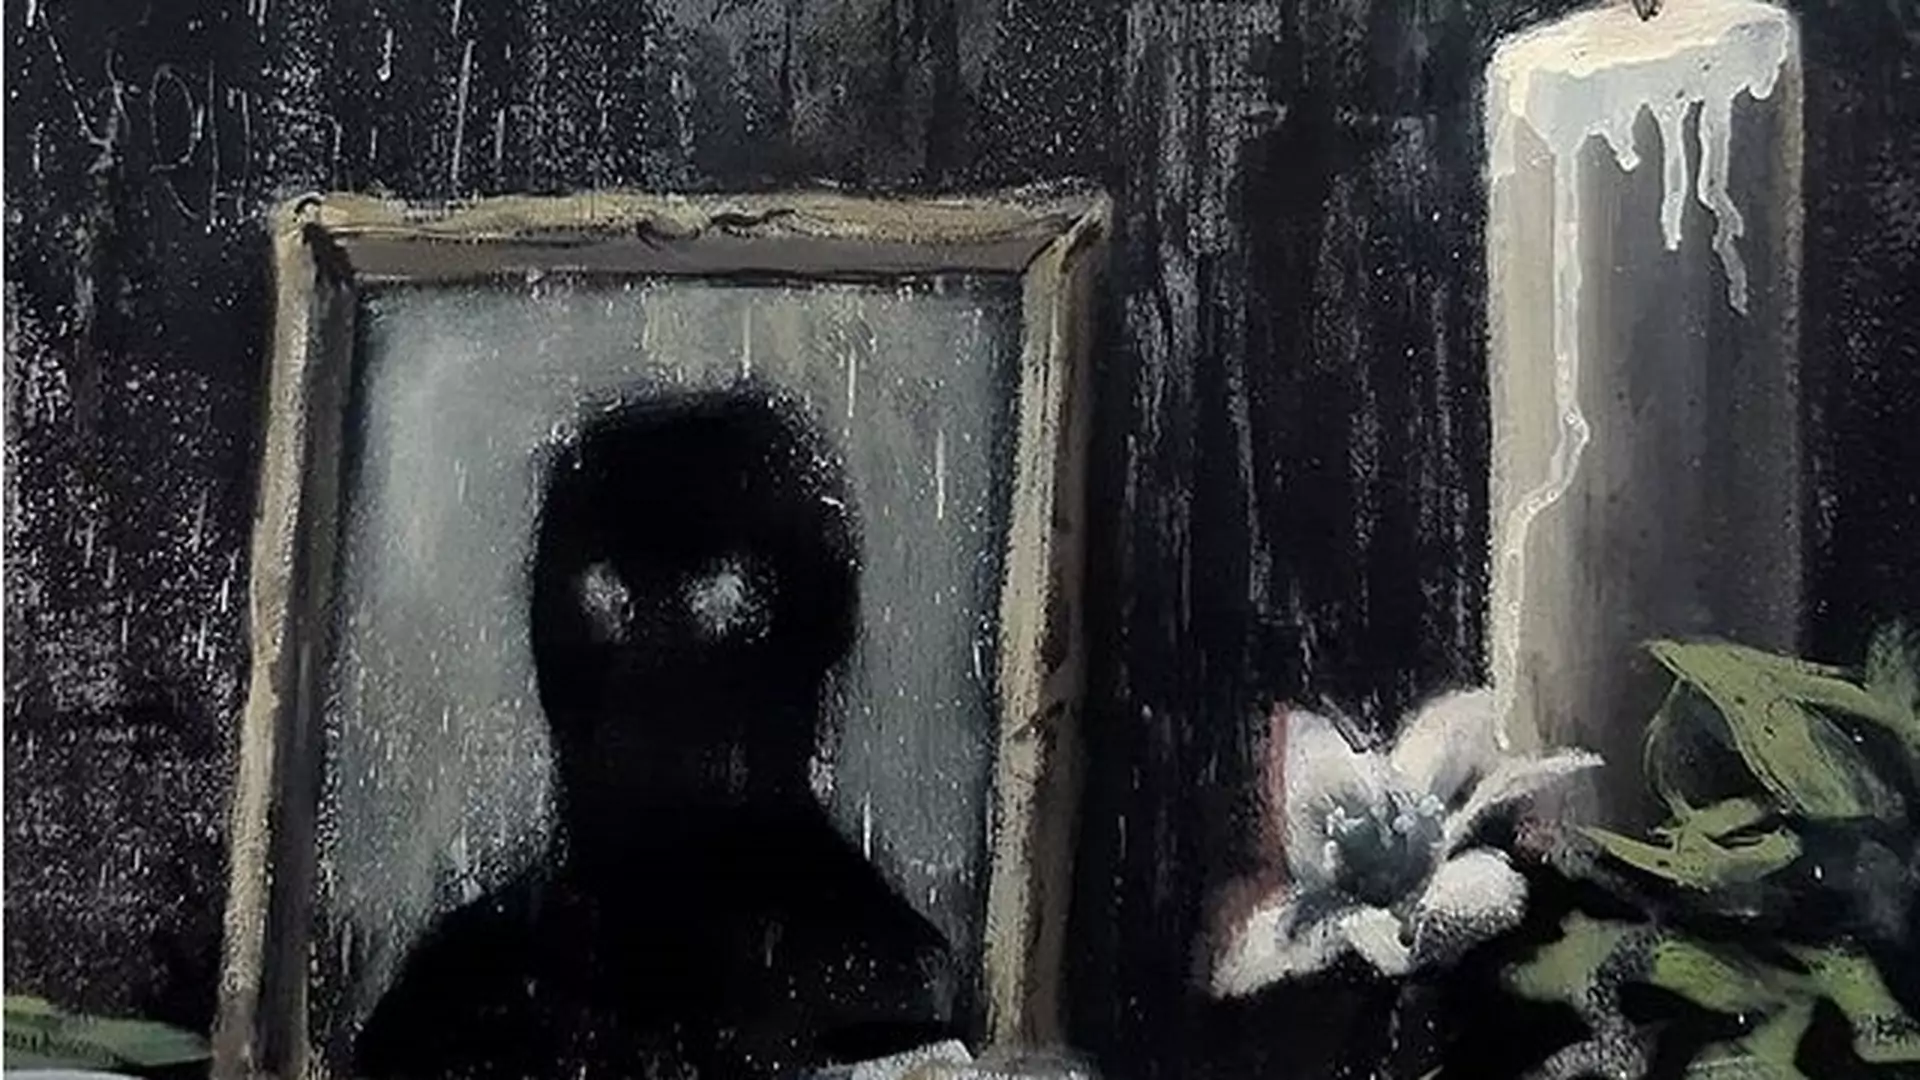 Banksy jak zwykle w punkt. Artysta zabrał głos w sprawie Black Lives Matter przejmującym obrazem